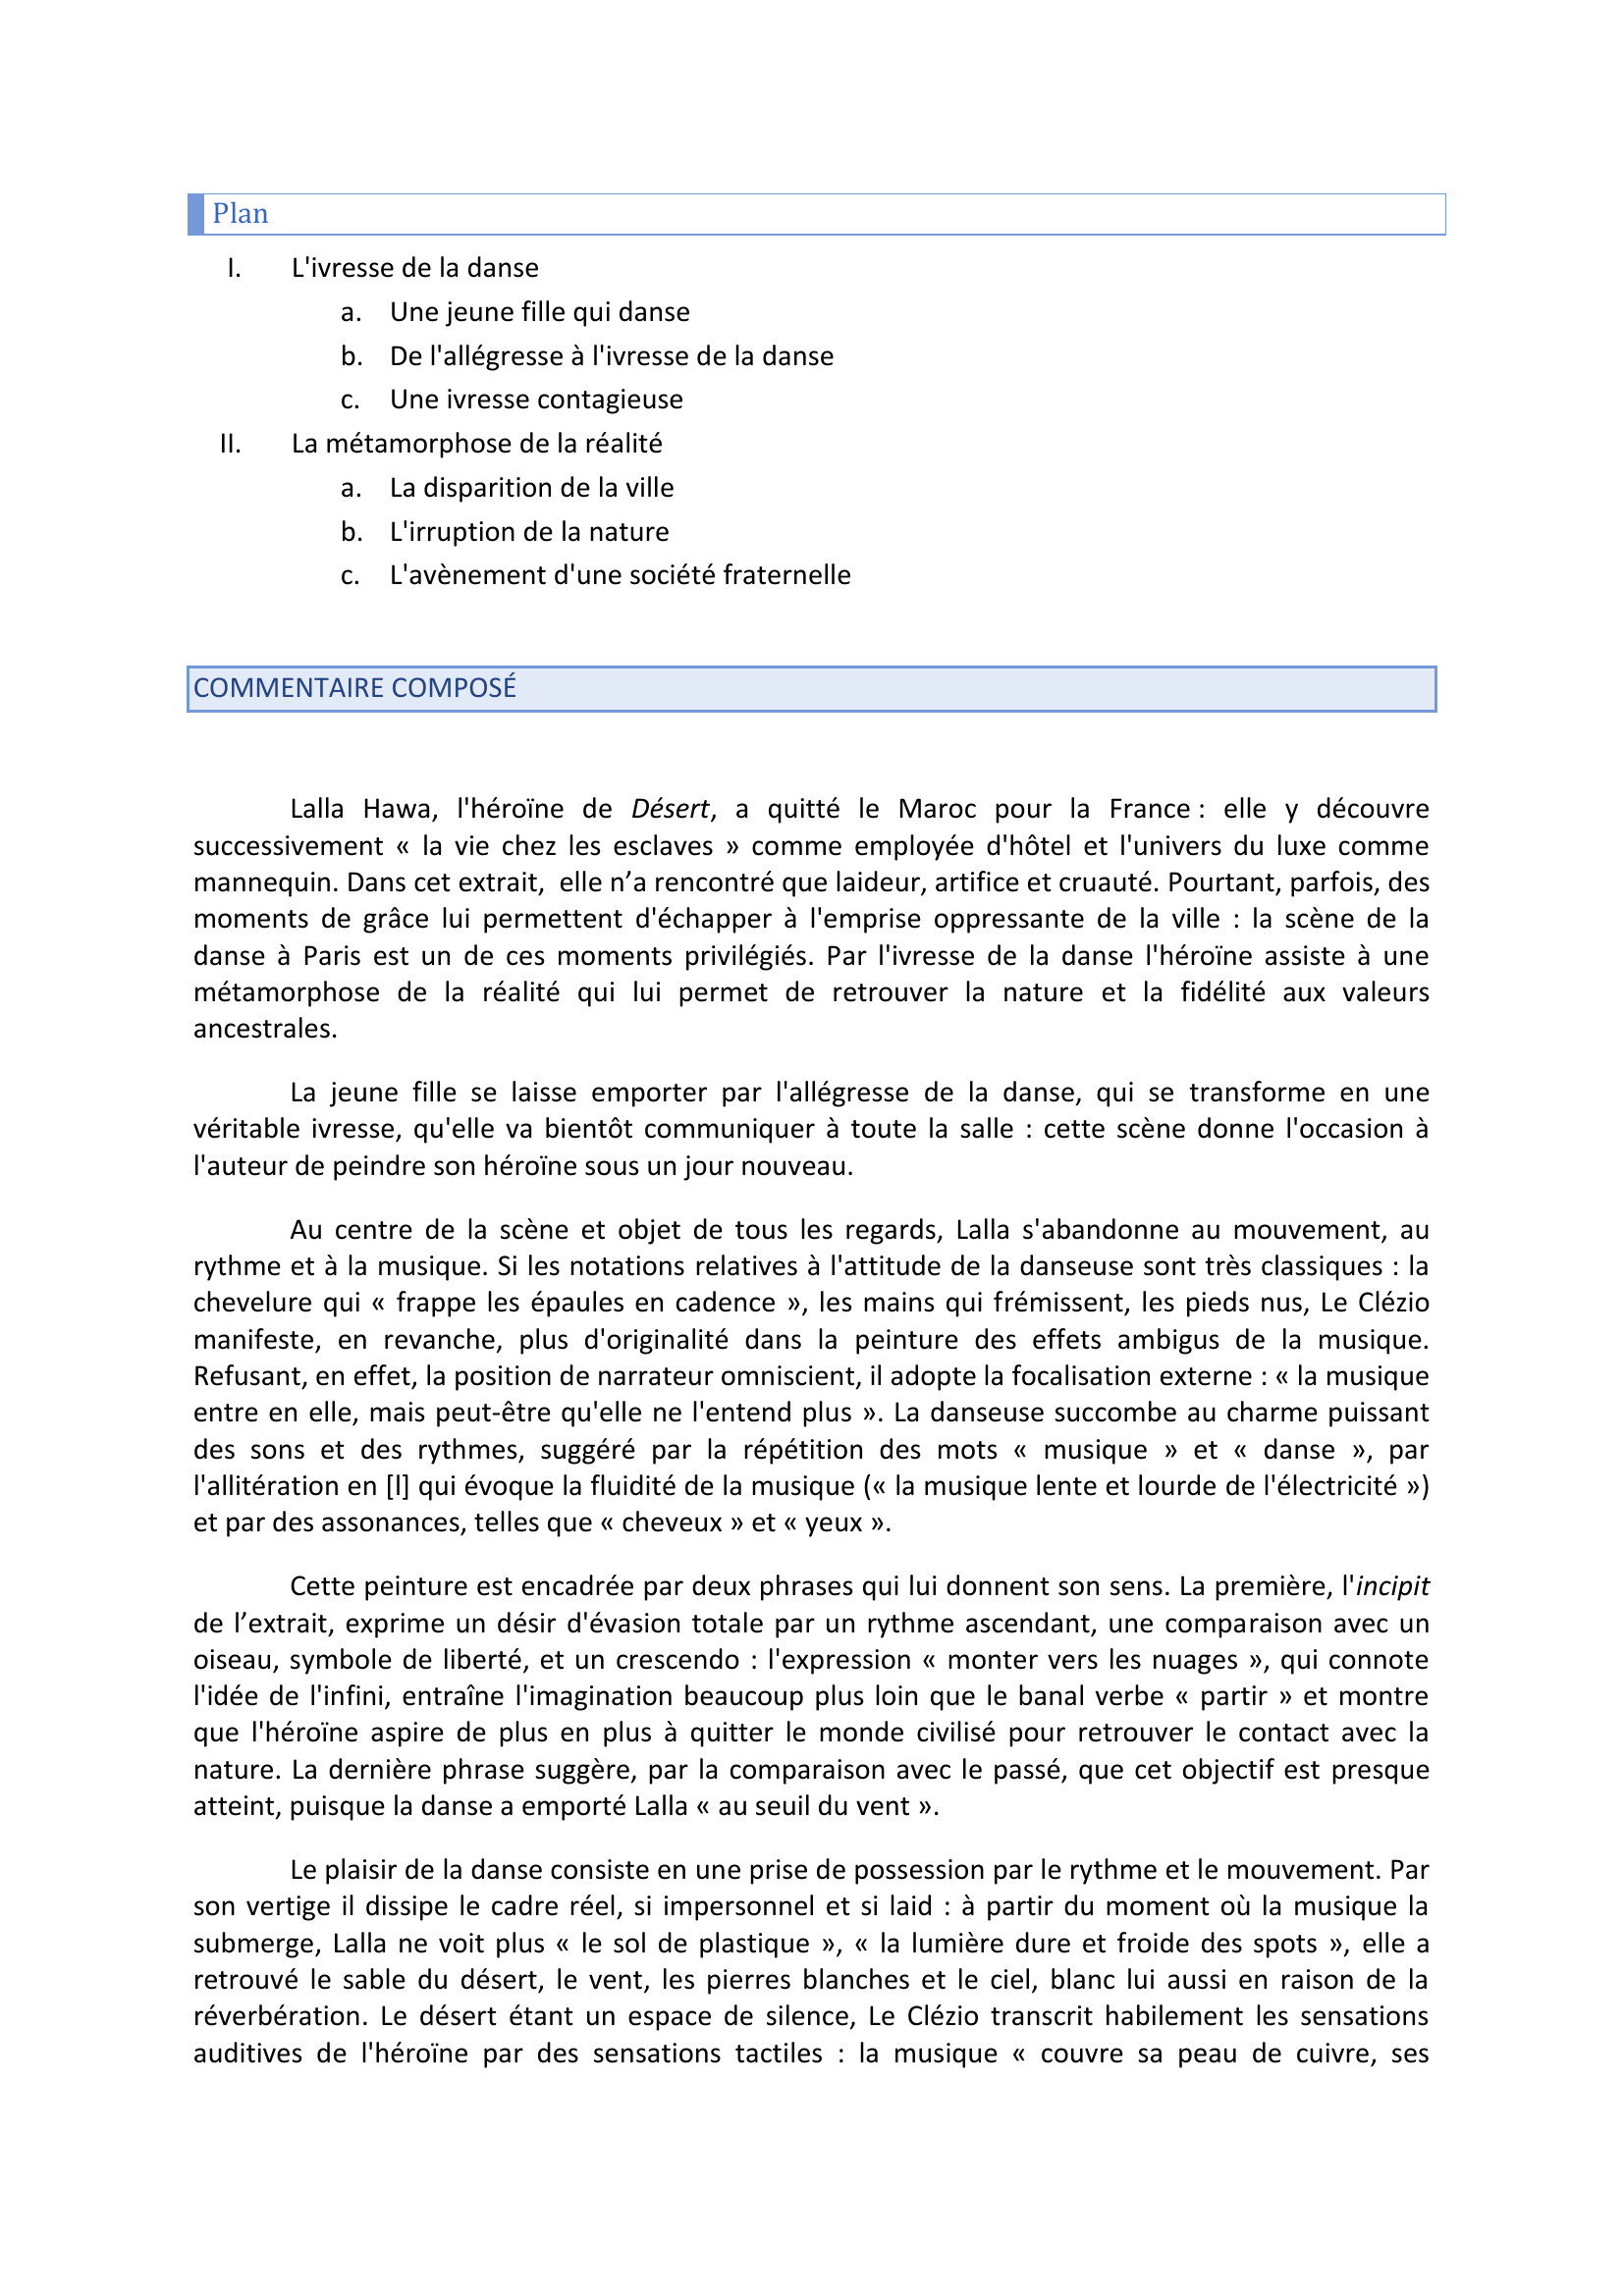 Prévisualisation du document Commentaire composé - L'ivresse de la danse J.-M.G. LE CLÉZIO, Désert.